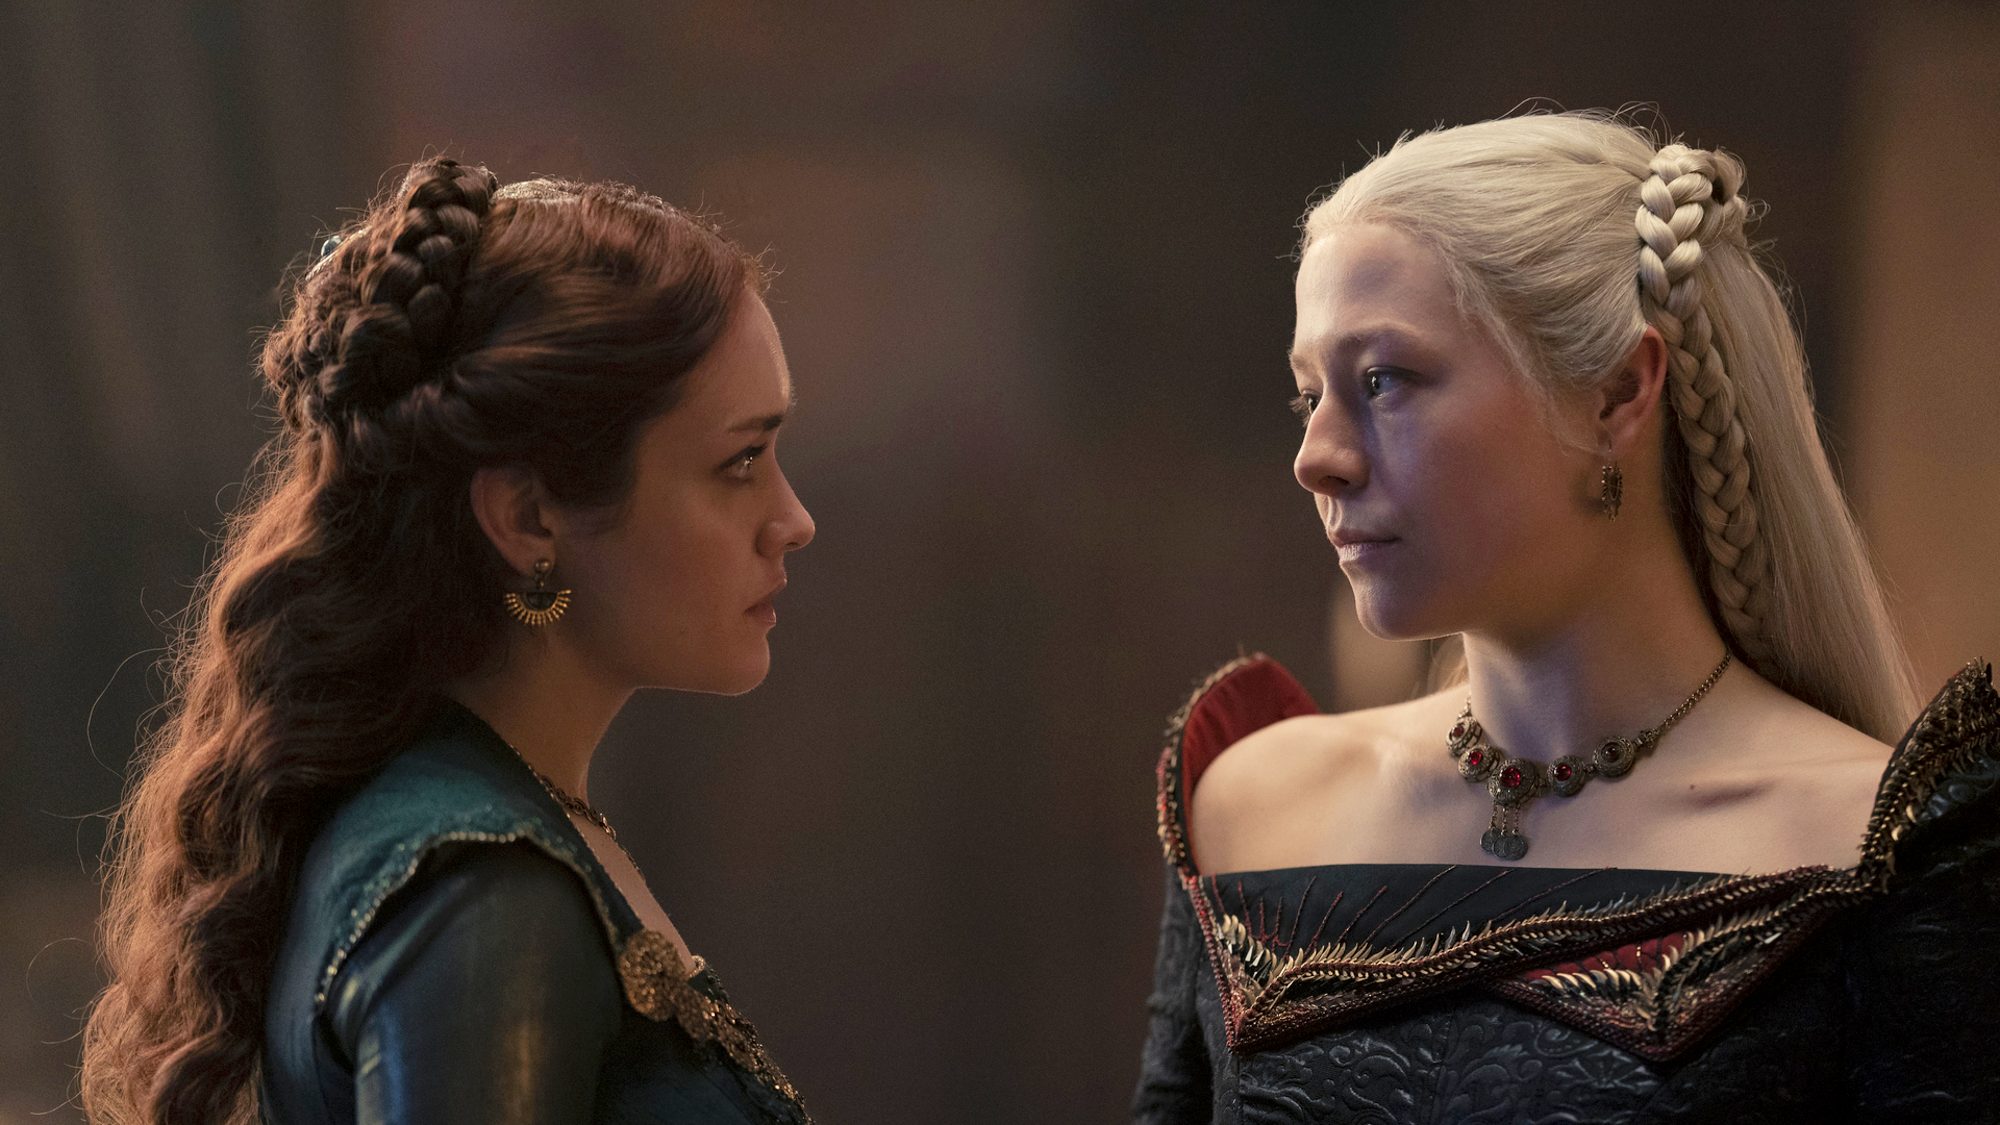 Cena da série em que Alicent Hightower, à esquerda, usando um vestido verde, encara Rhaenyra Targaryen, que veste um vestido preto com ornamentos vermelhos.